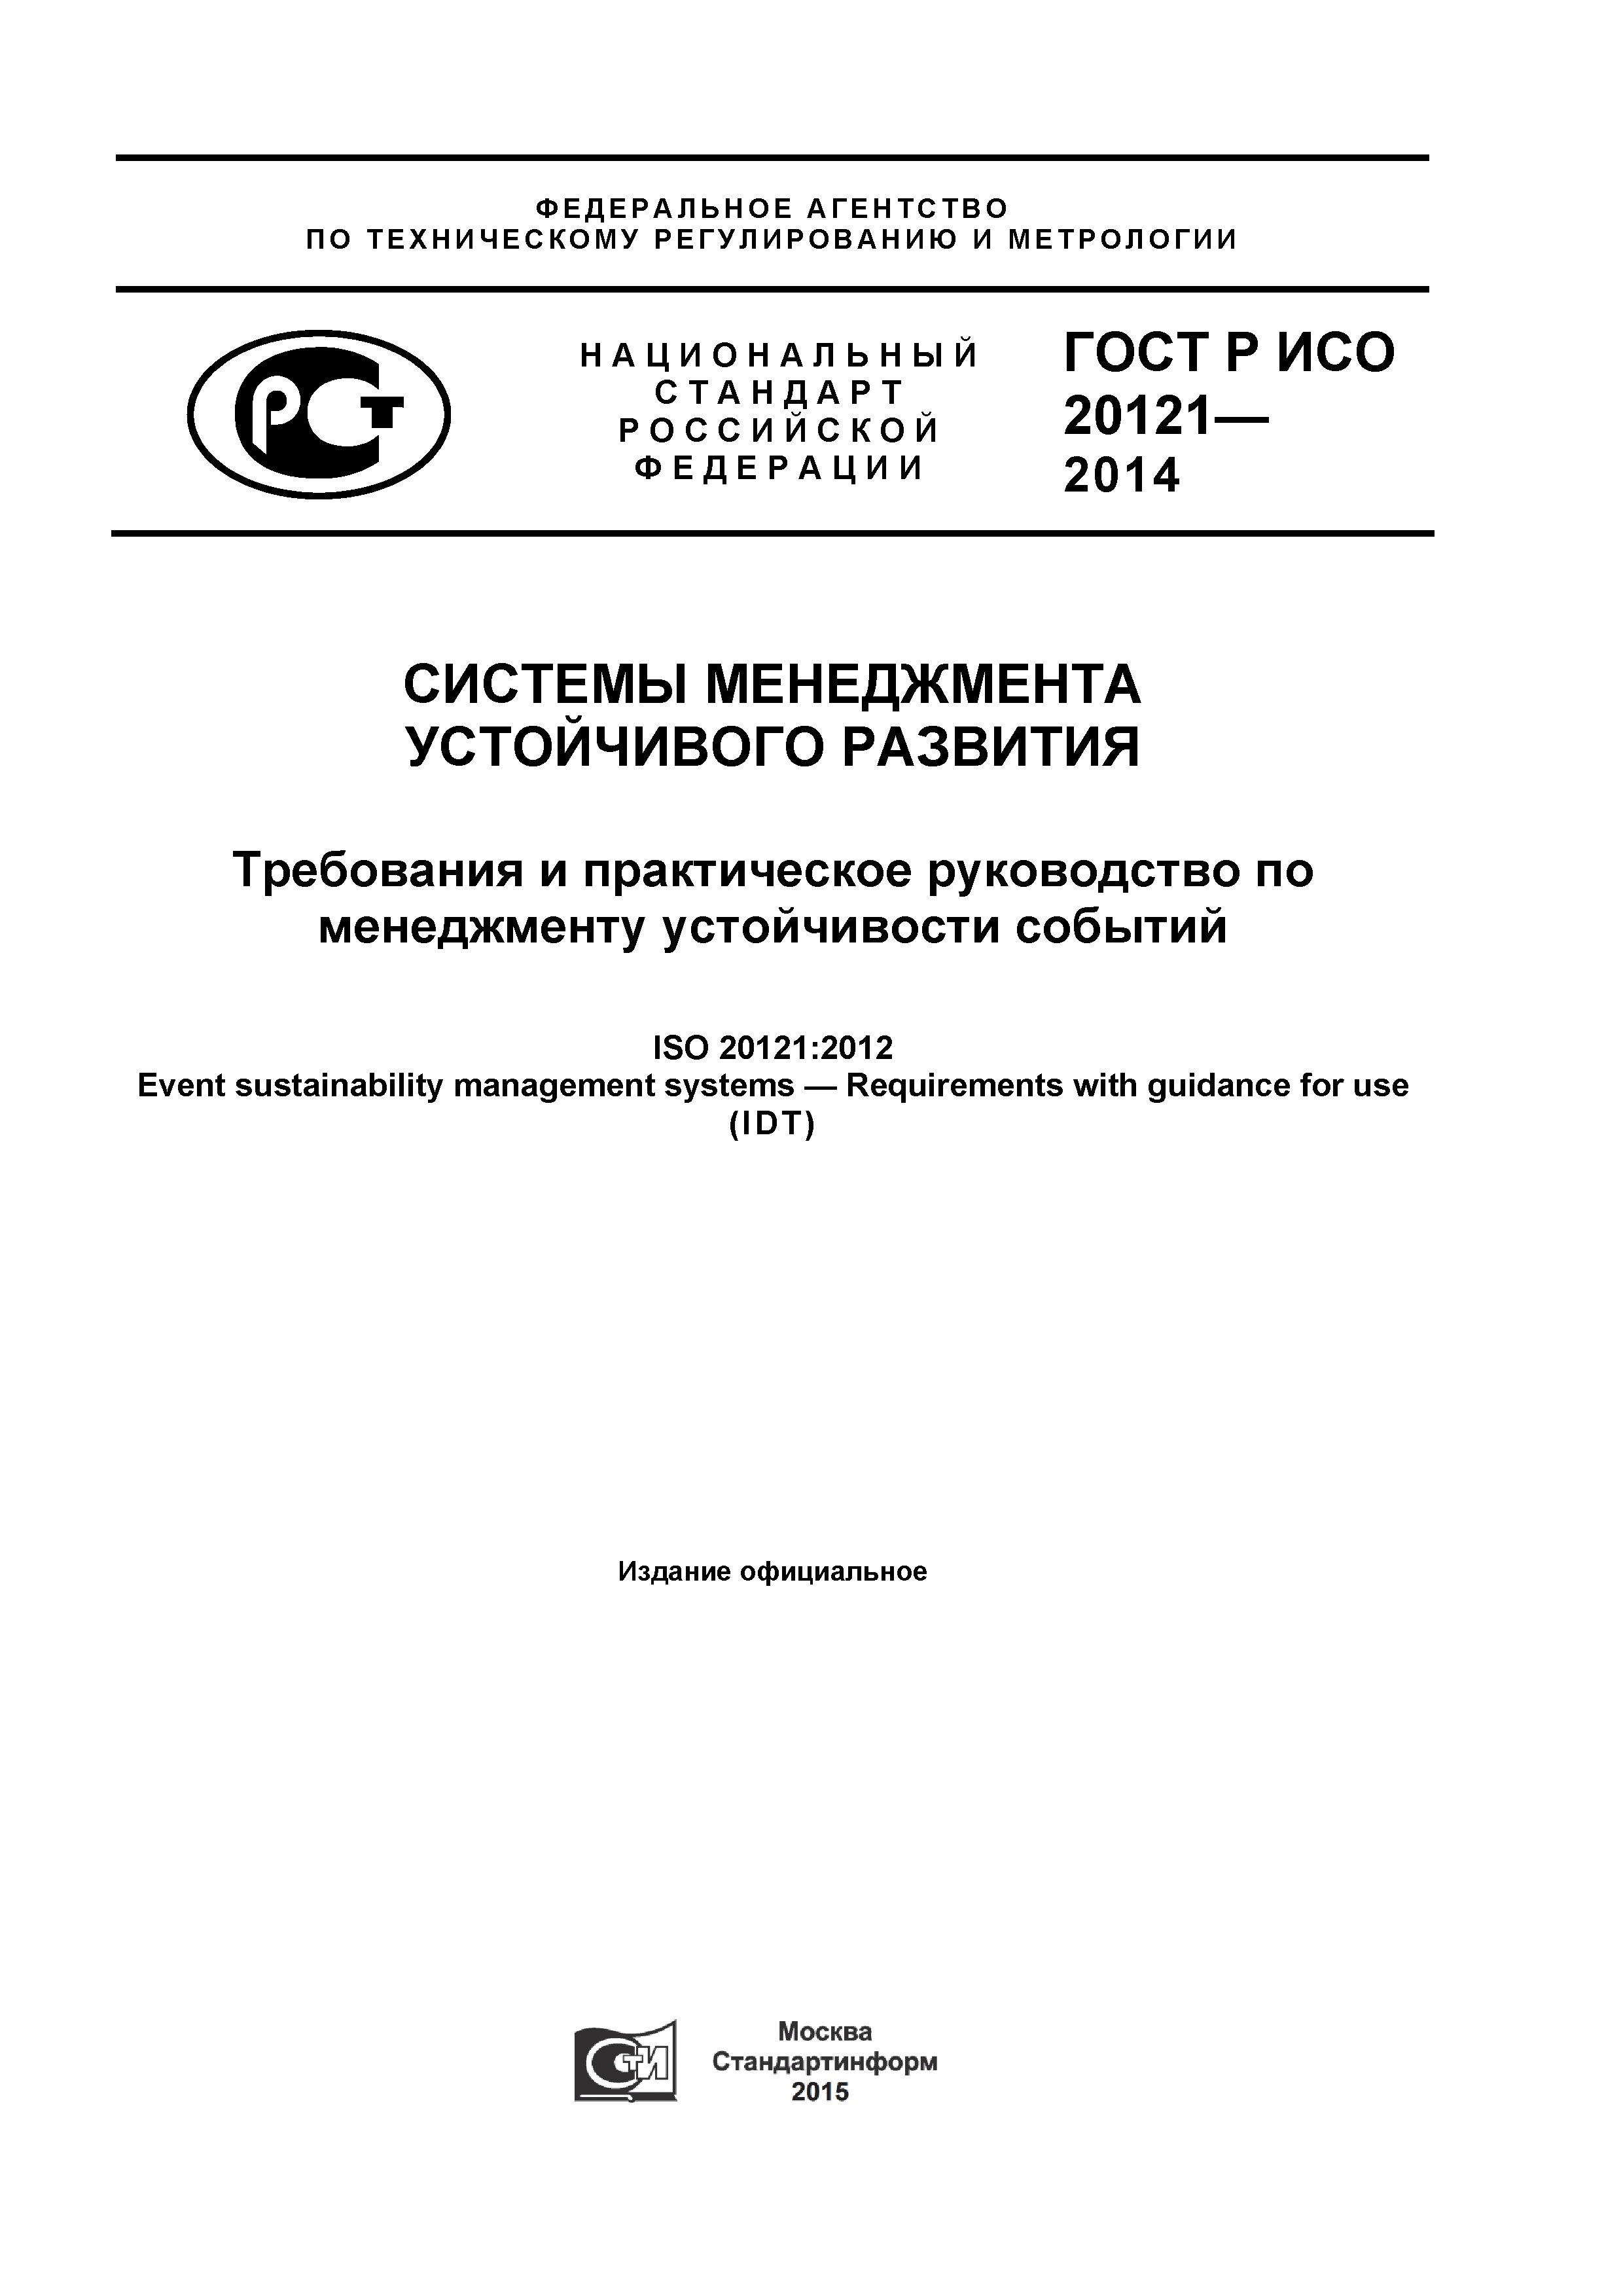 ГОСТ Р ИСО 20121-2014